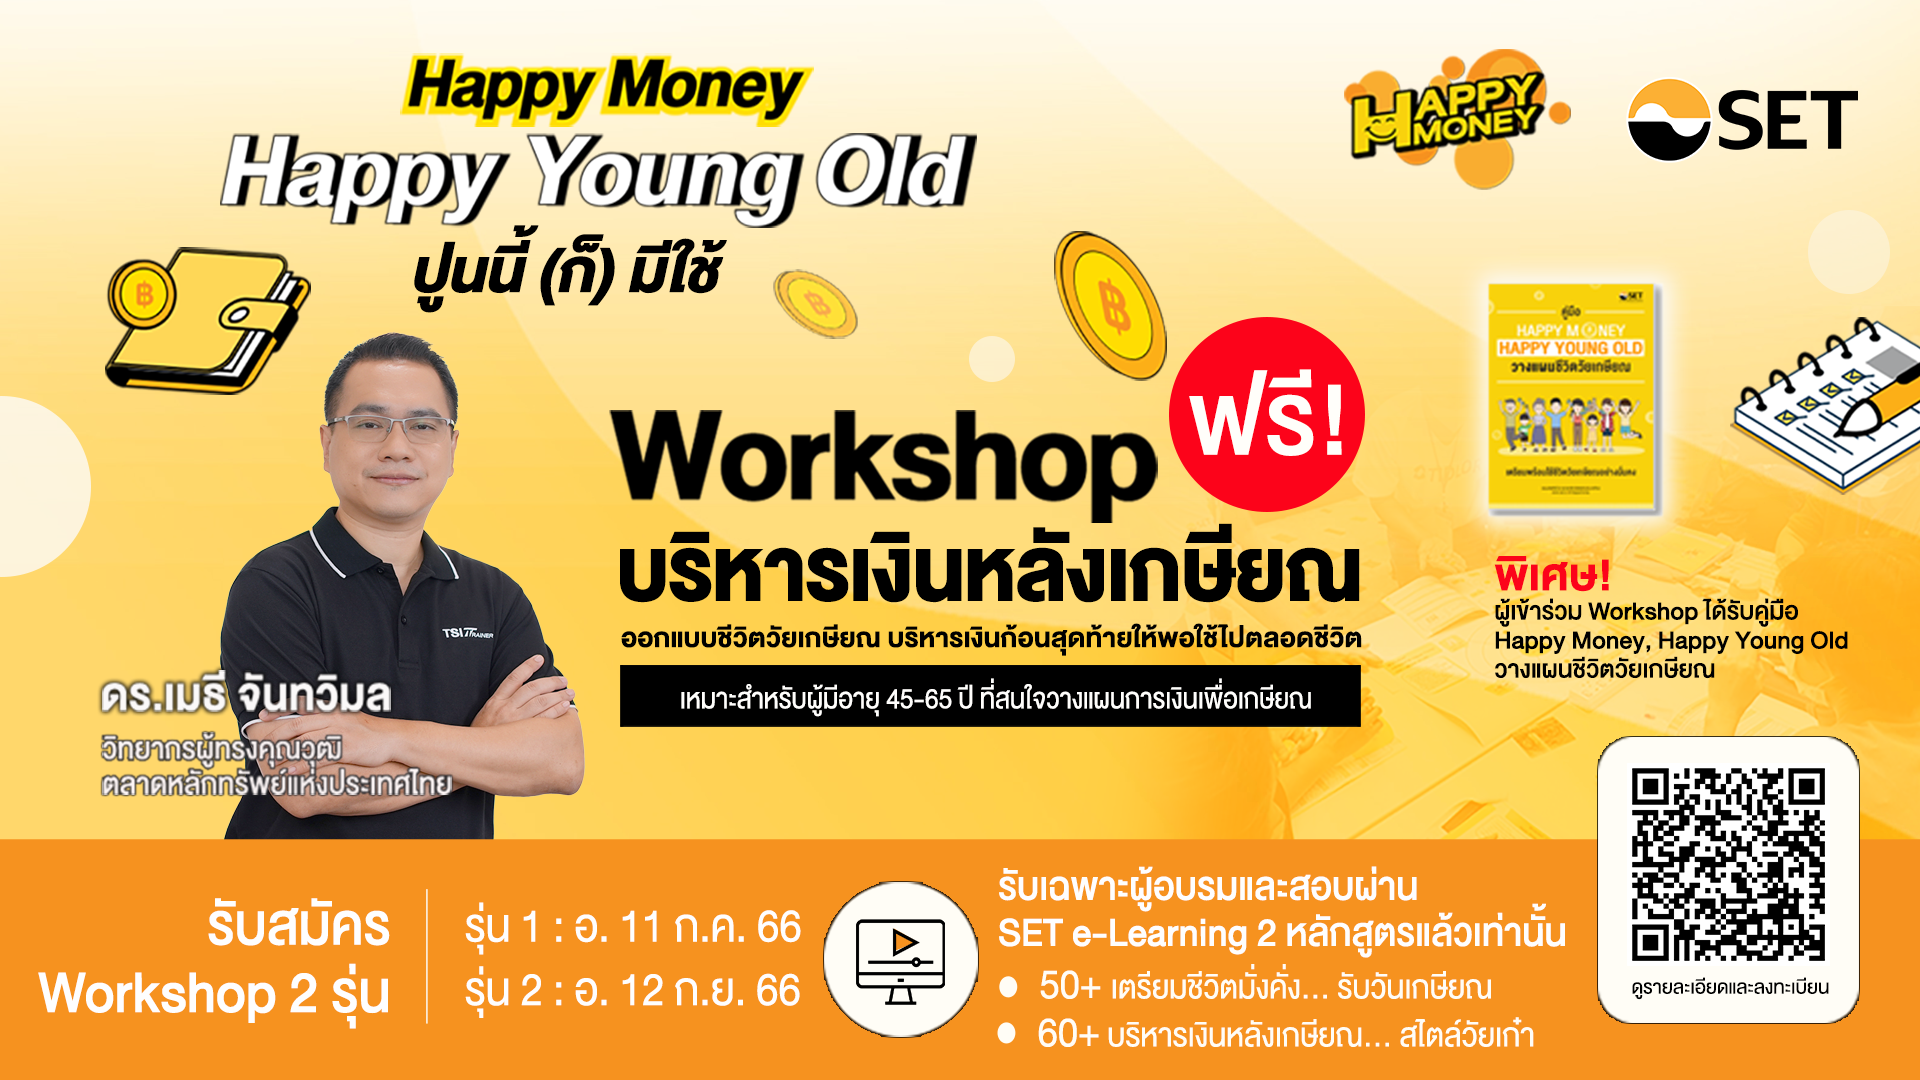 ตลท. ชวน Workshop รับมือเกษียณกับ “Happy Money, Happy Young Old”